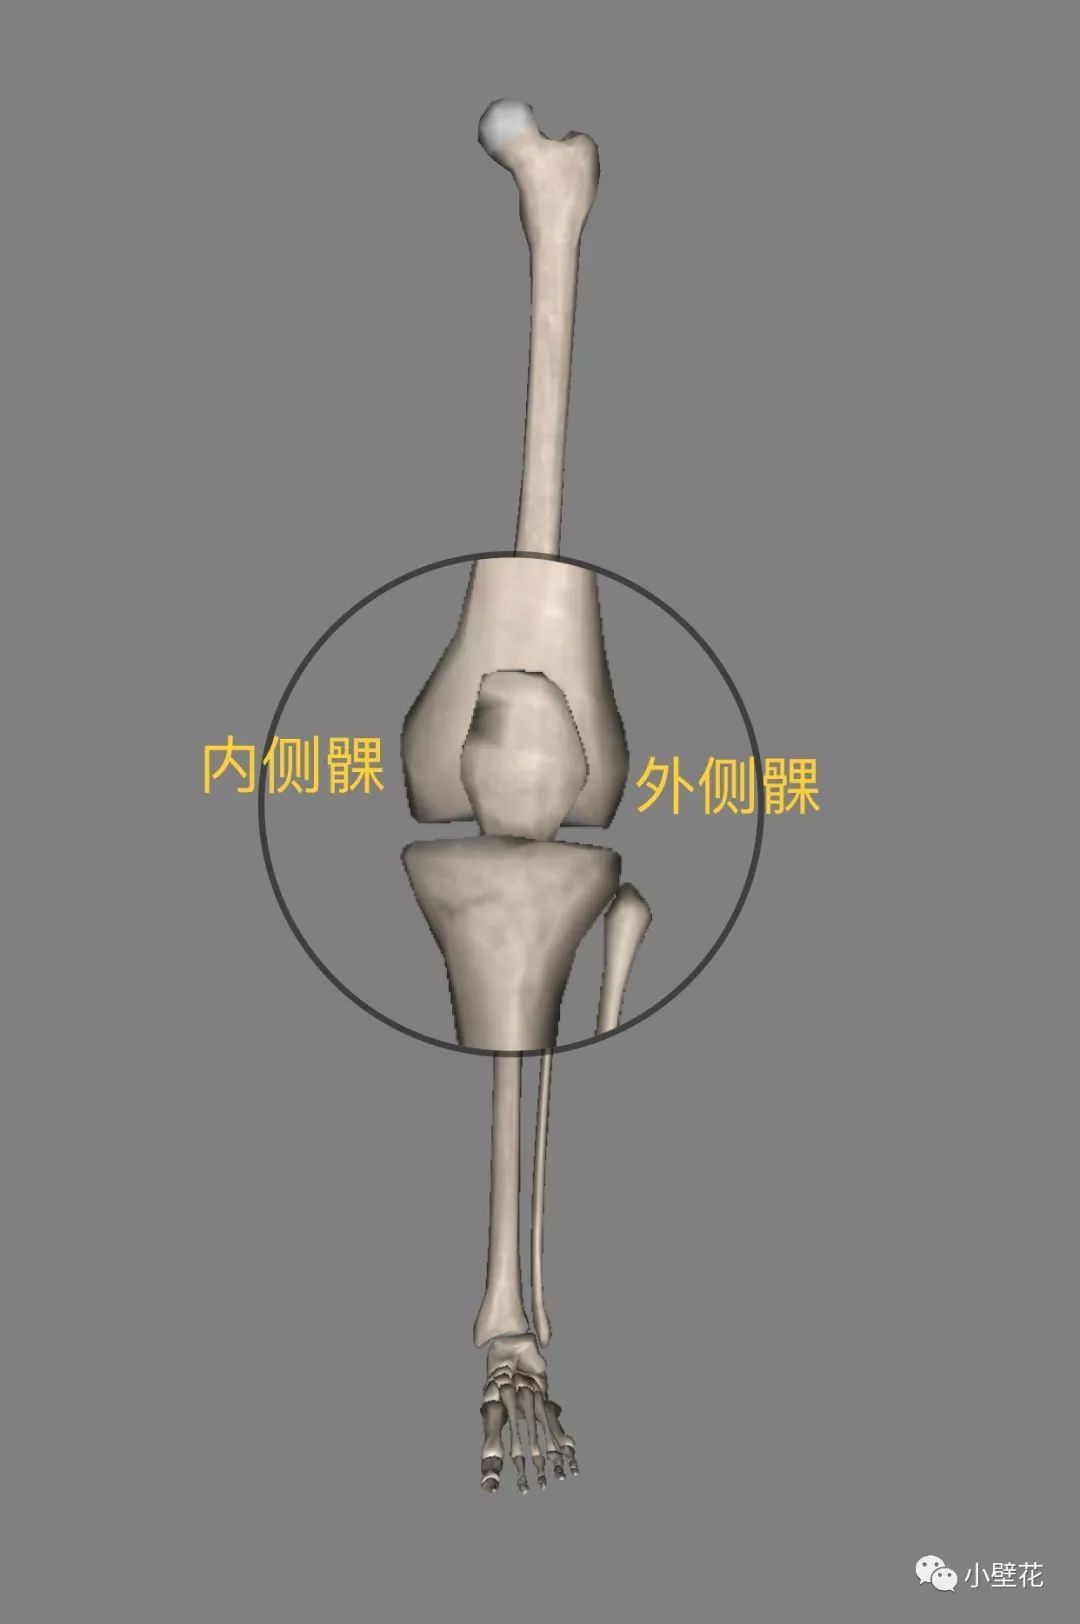 膝盖内侧突出的原理和解决方法_哔哩哔哩 (゜-゜)つロ 干杯~-bilibili